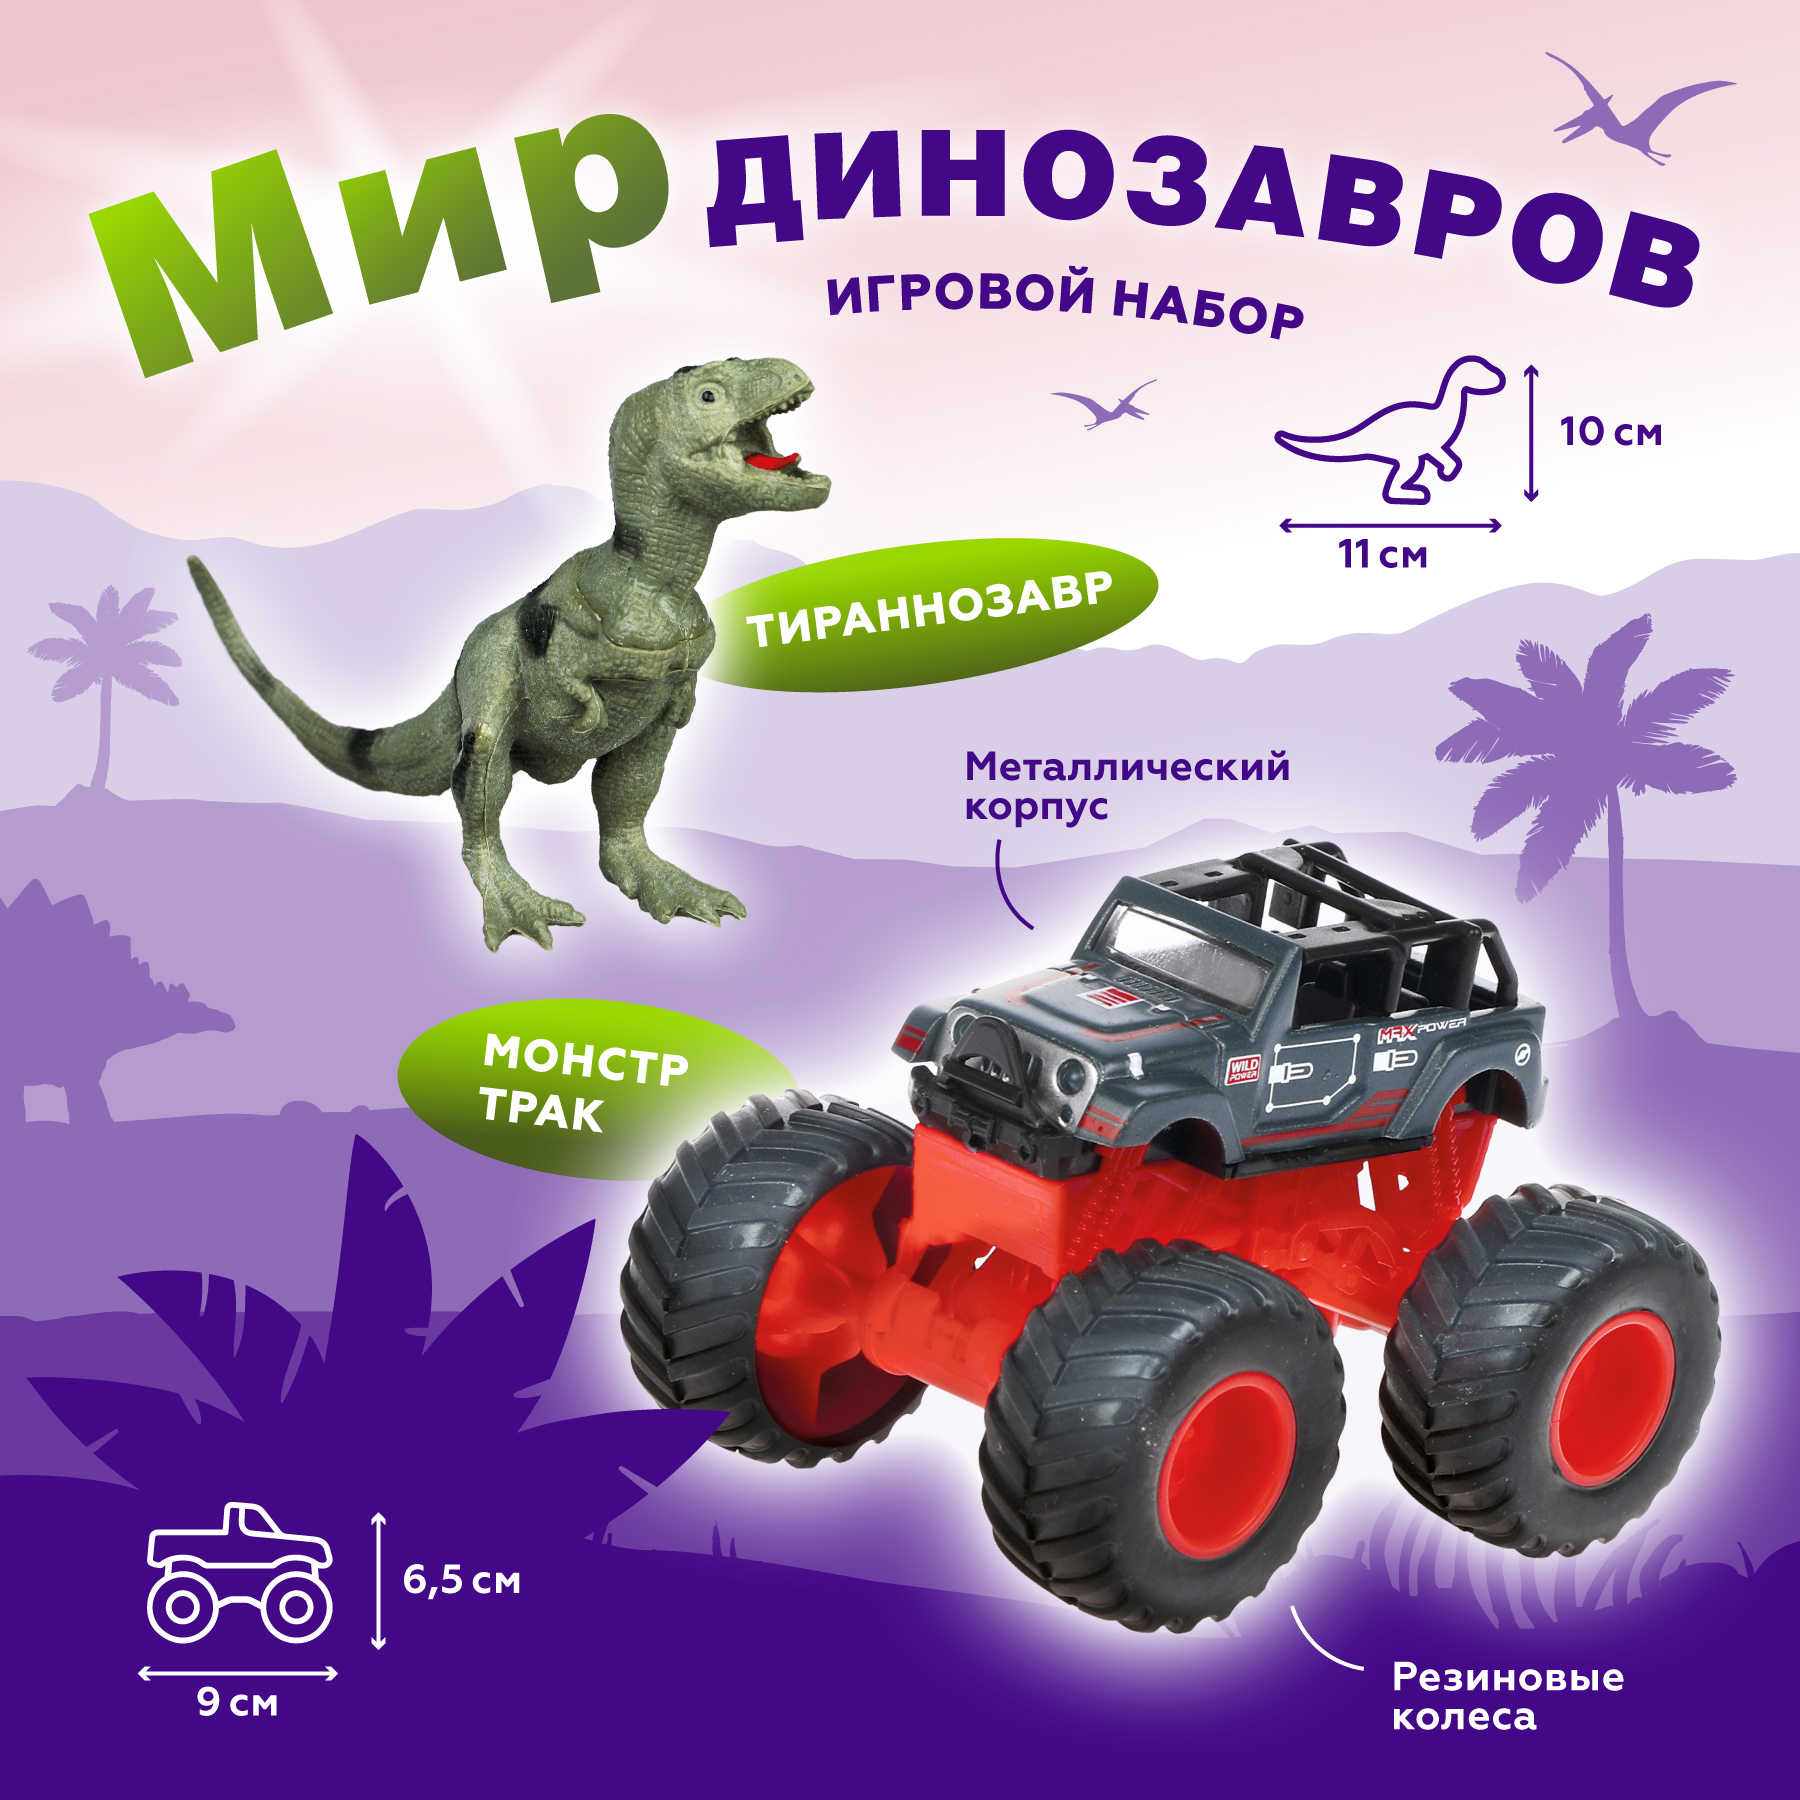 Монстр трак Пламенный мотор, Мир динозавров, металлическая фигурка тираннозавра 870532